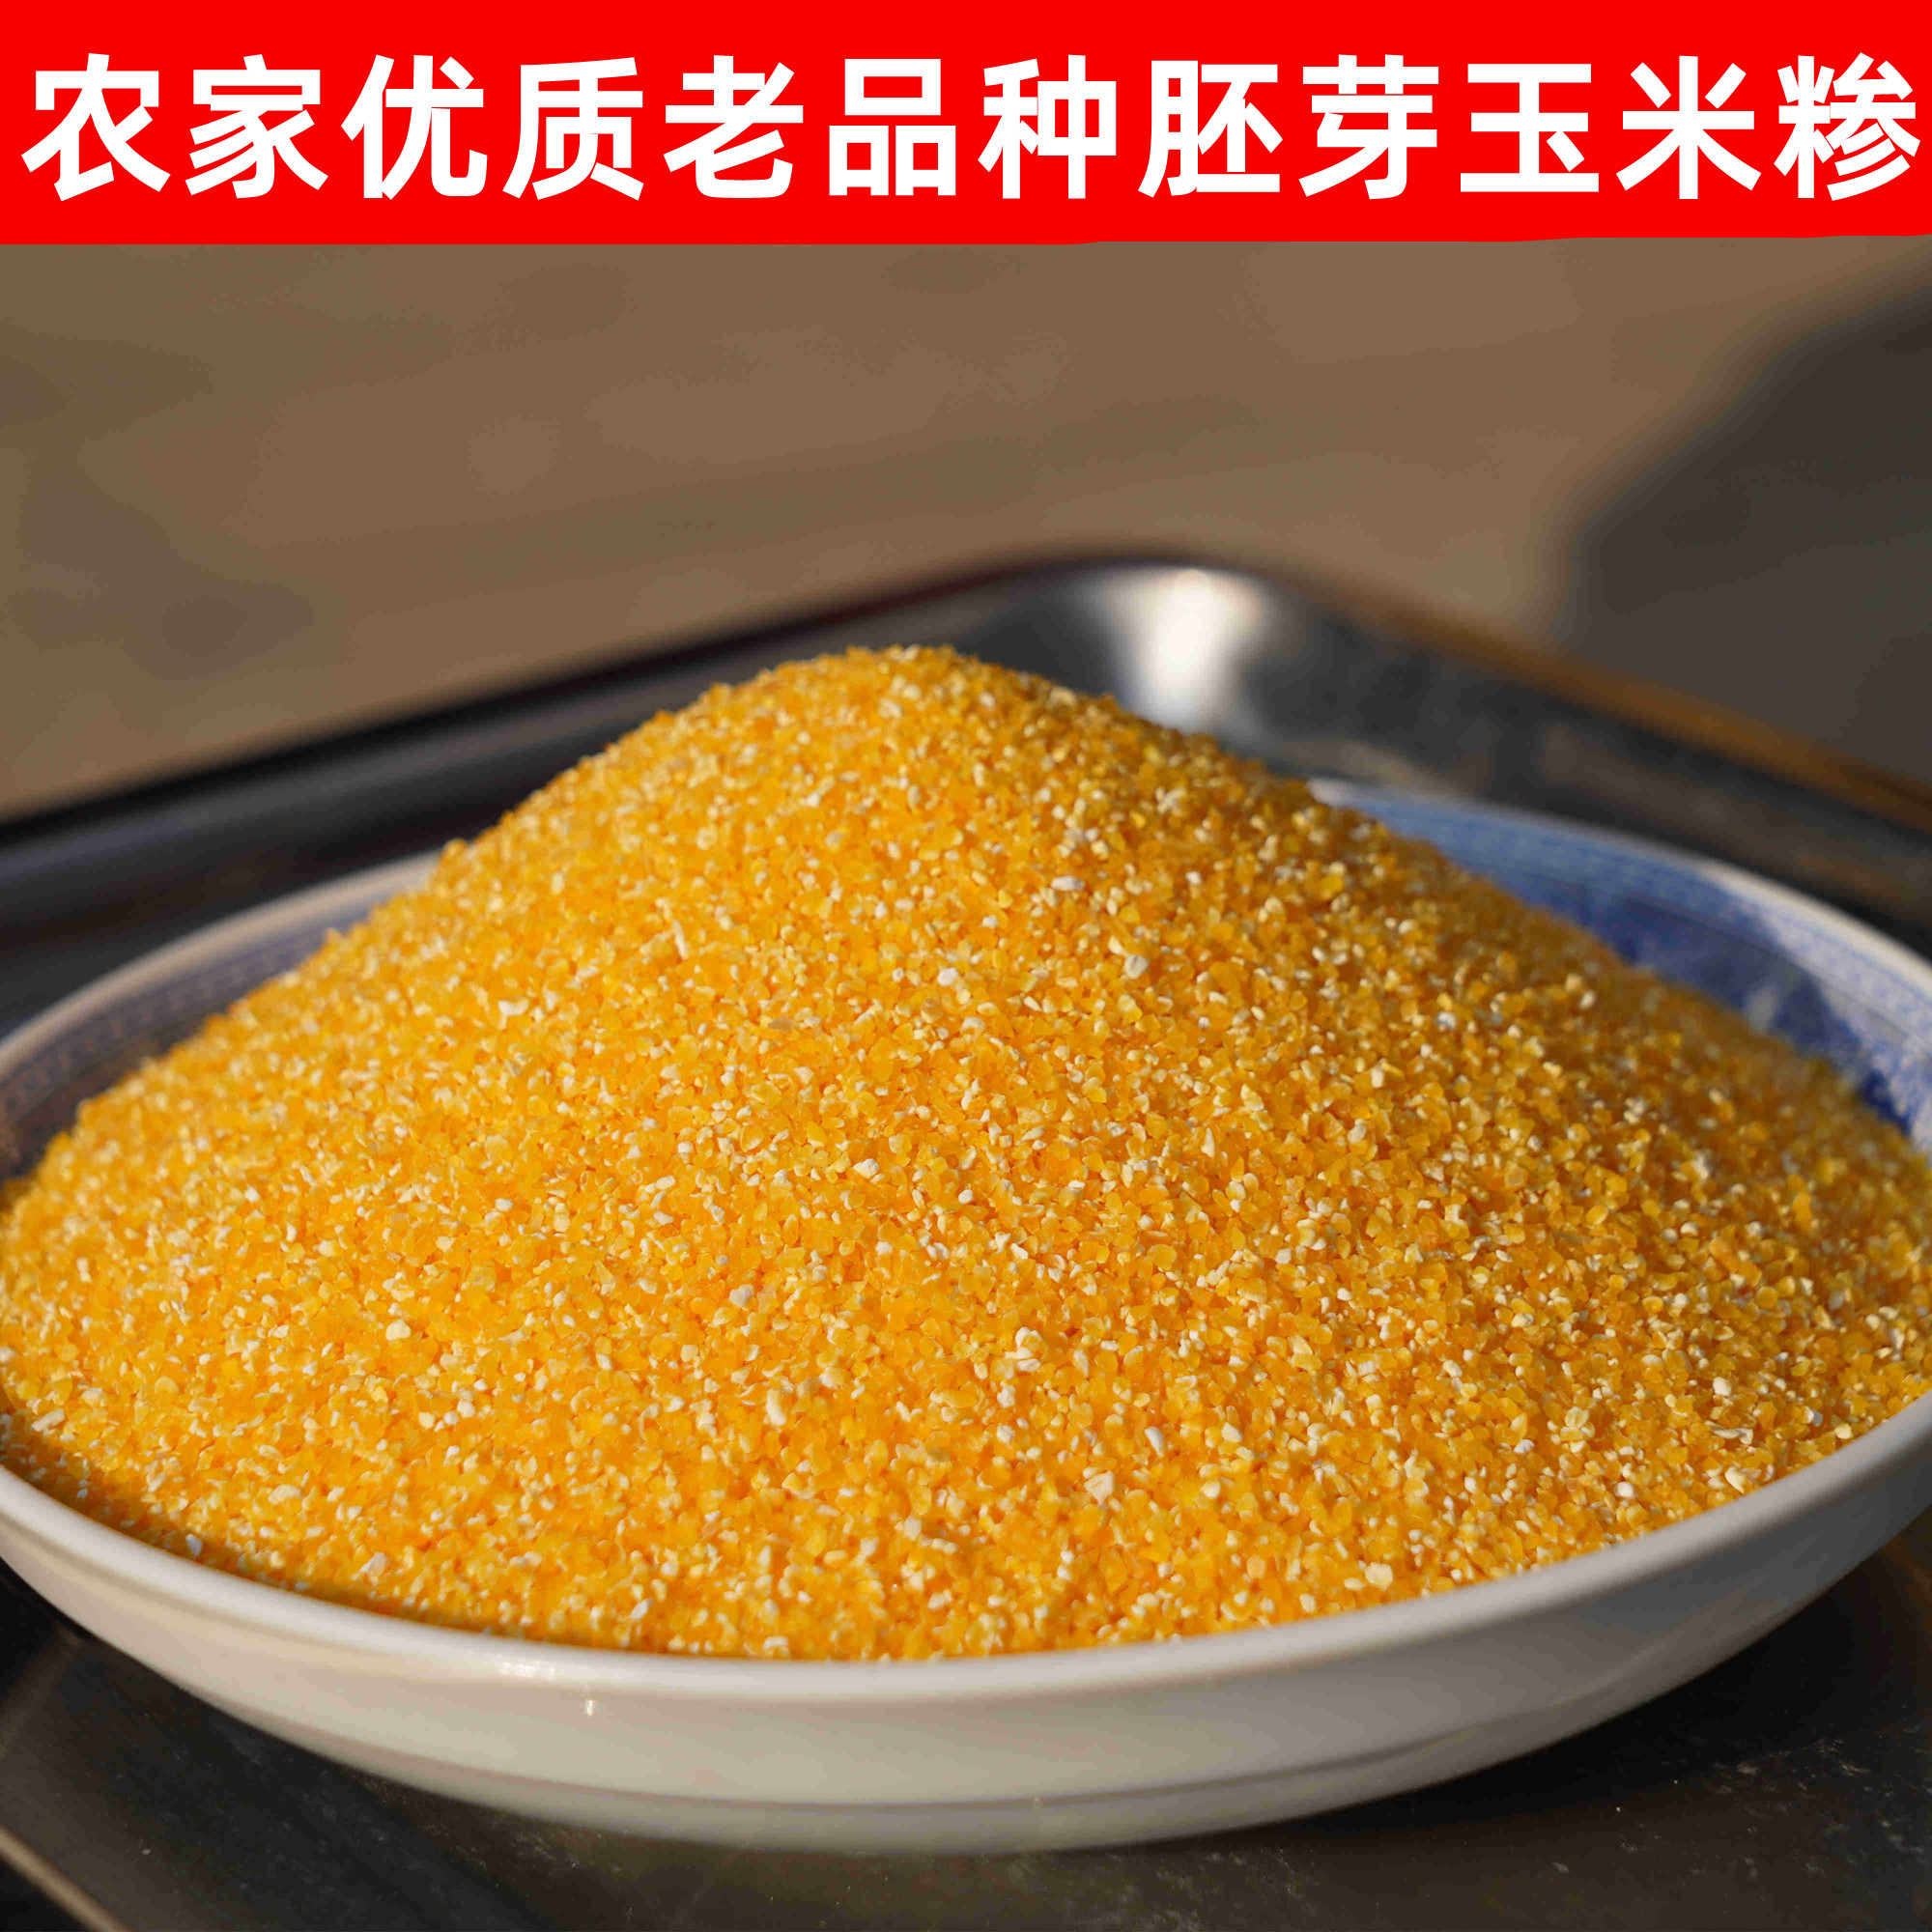 农家新粮玉米糁小碴子苞米碎5斤